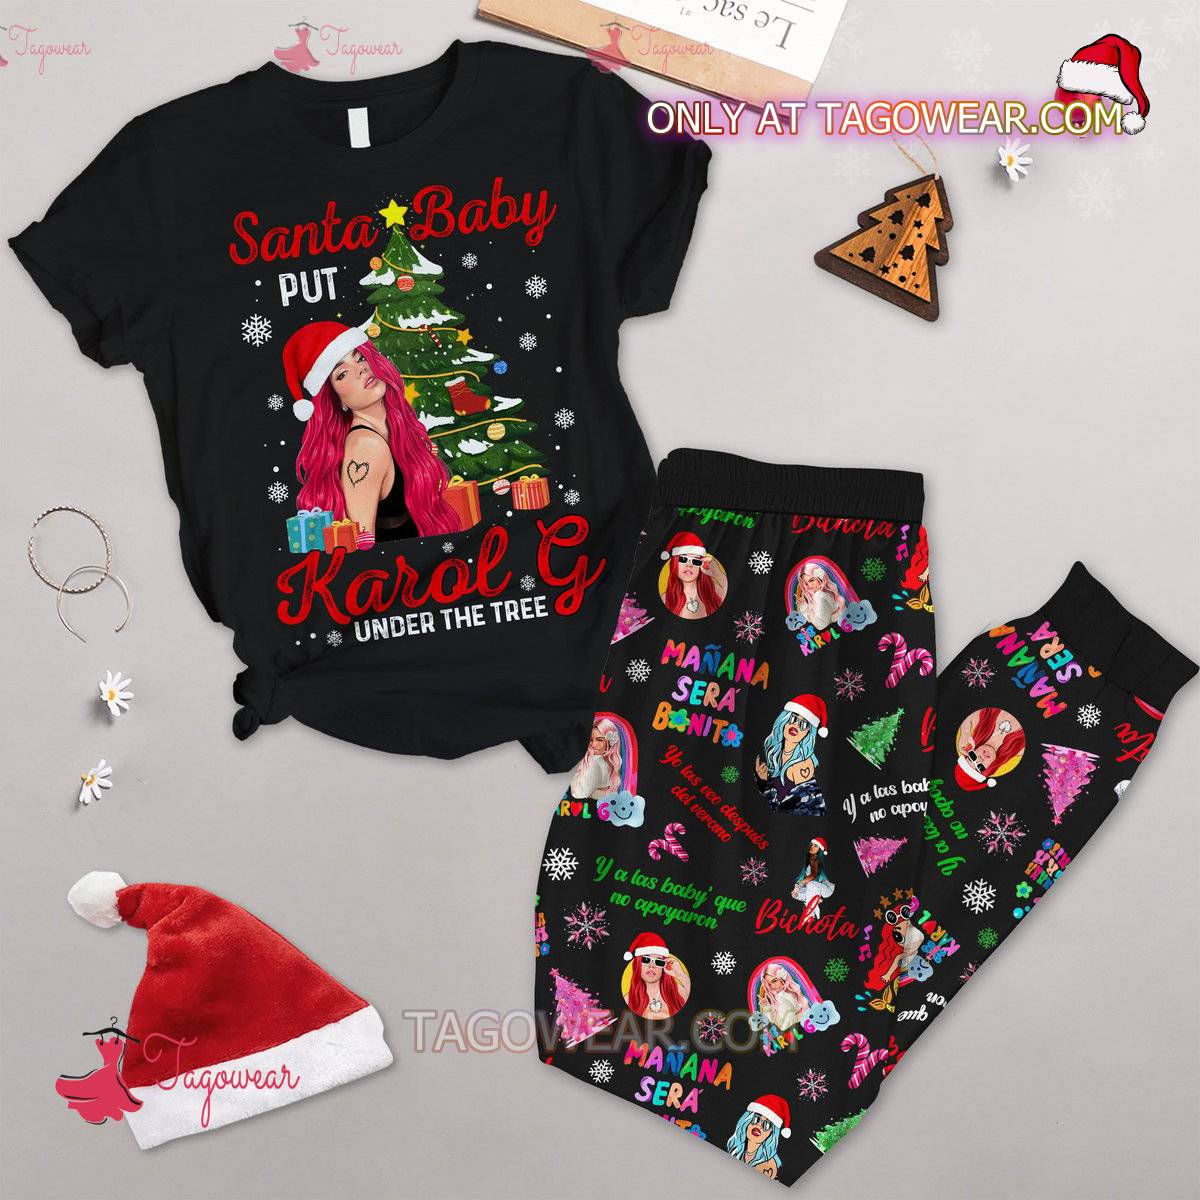 Santa Baby Put Karol G Under The Tree Pajamas Set